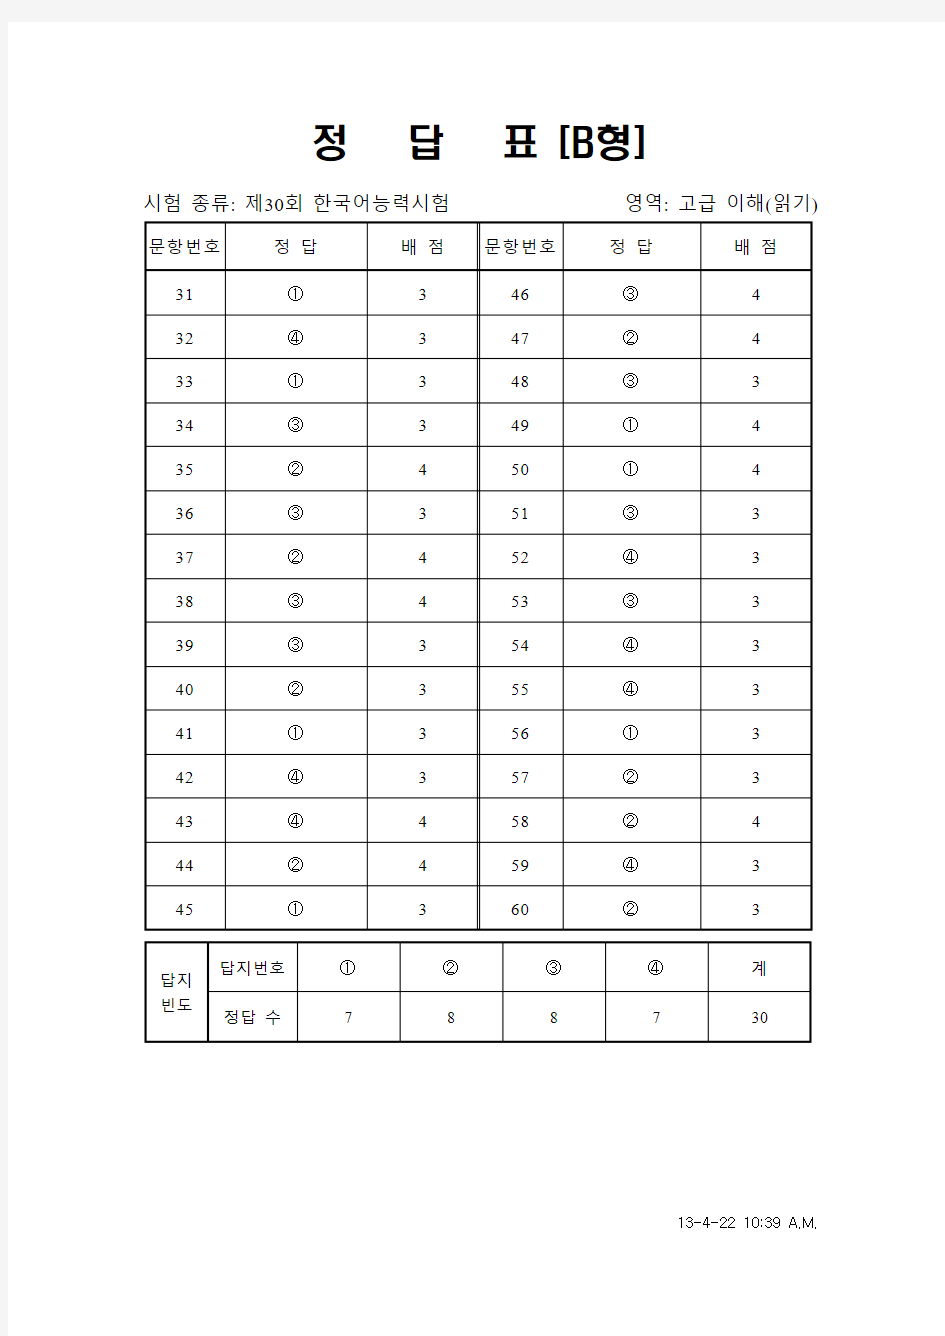 韩国语能力考试(TOPIK)真题资料【30】30届高级阅读答案